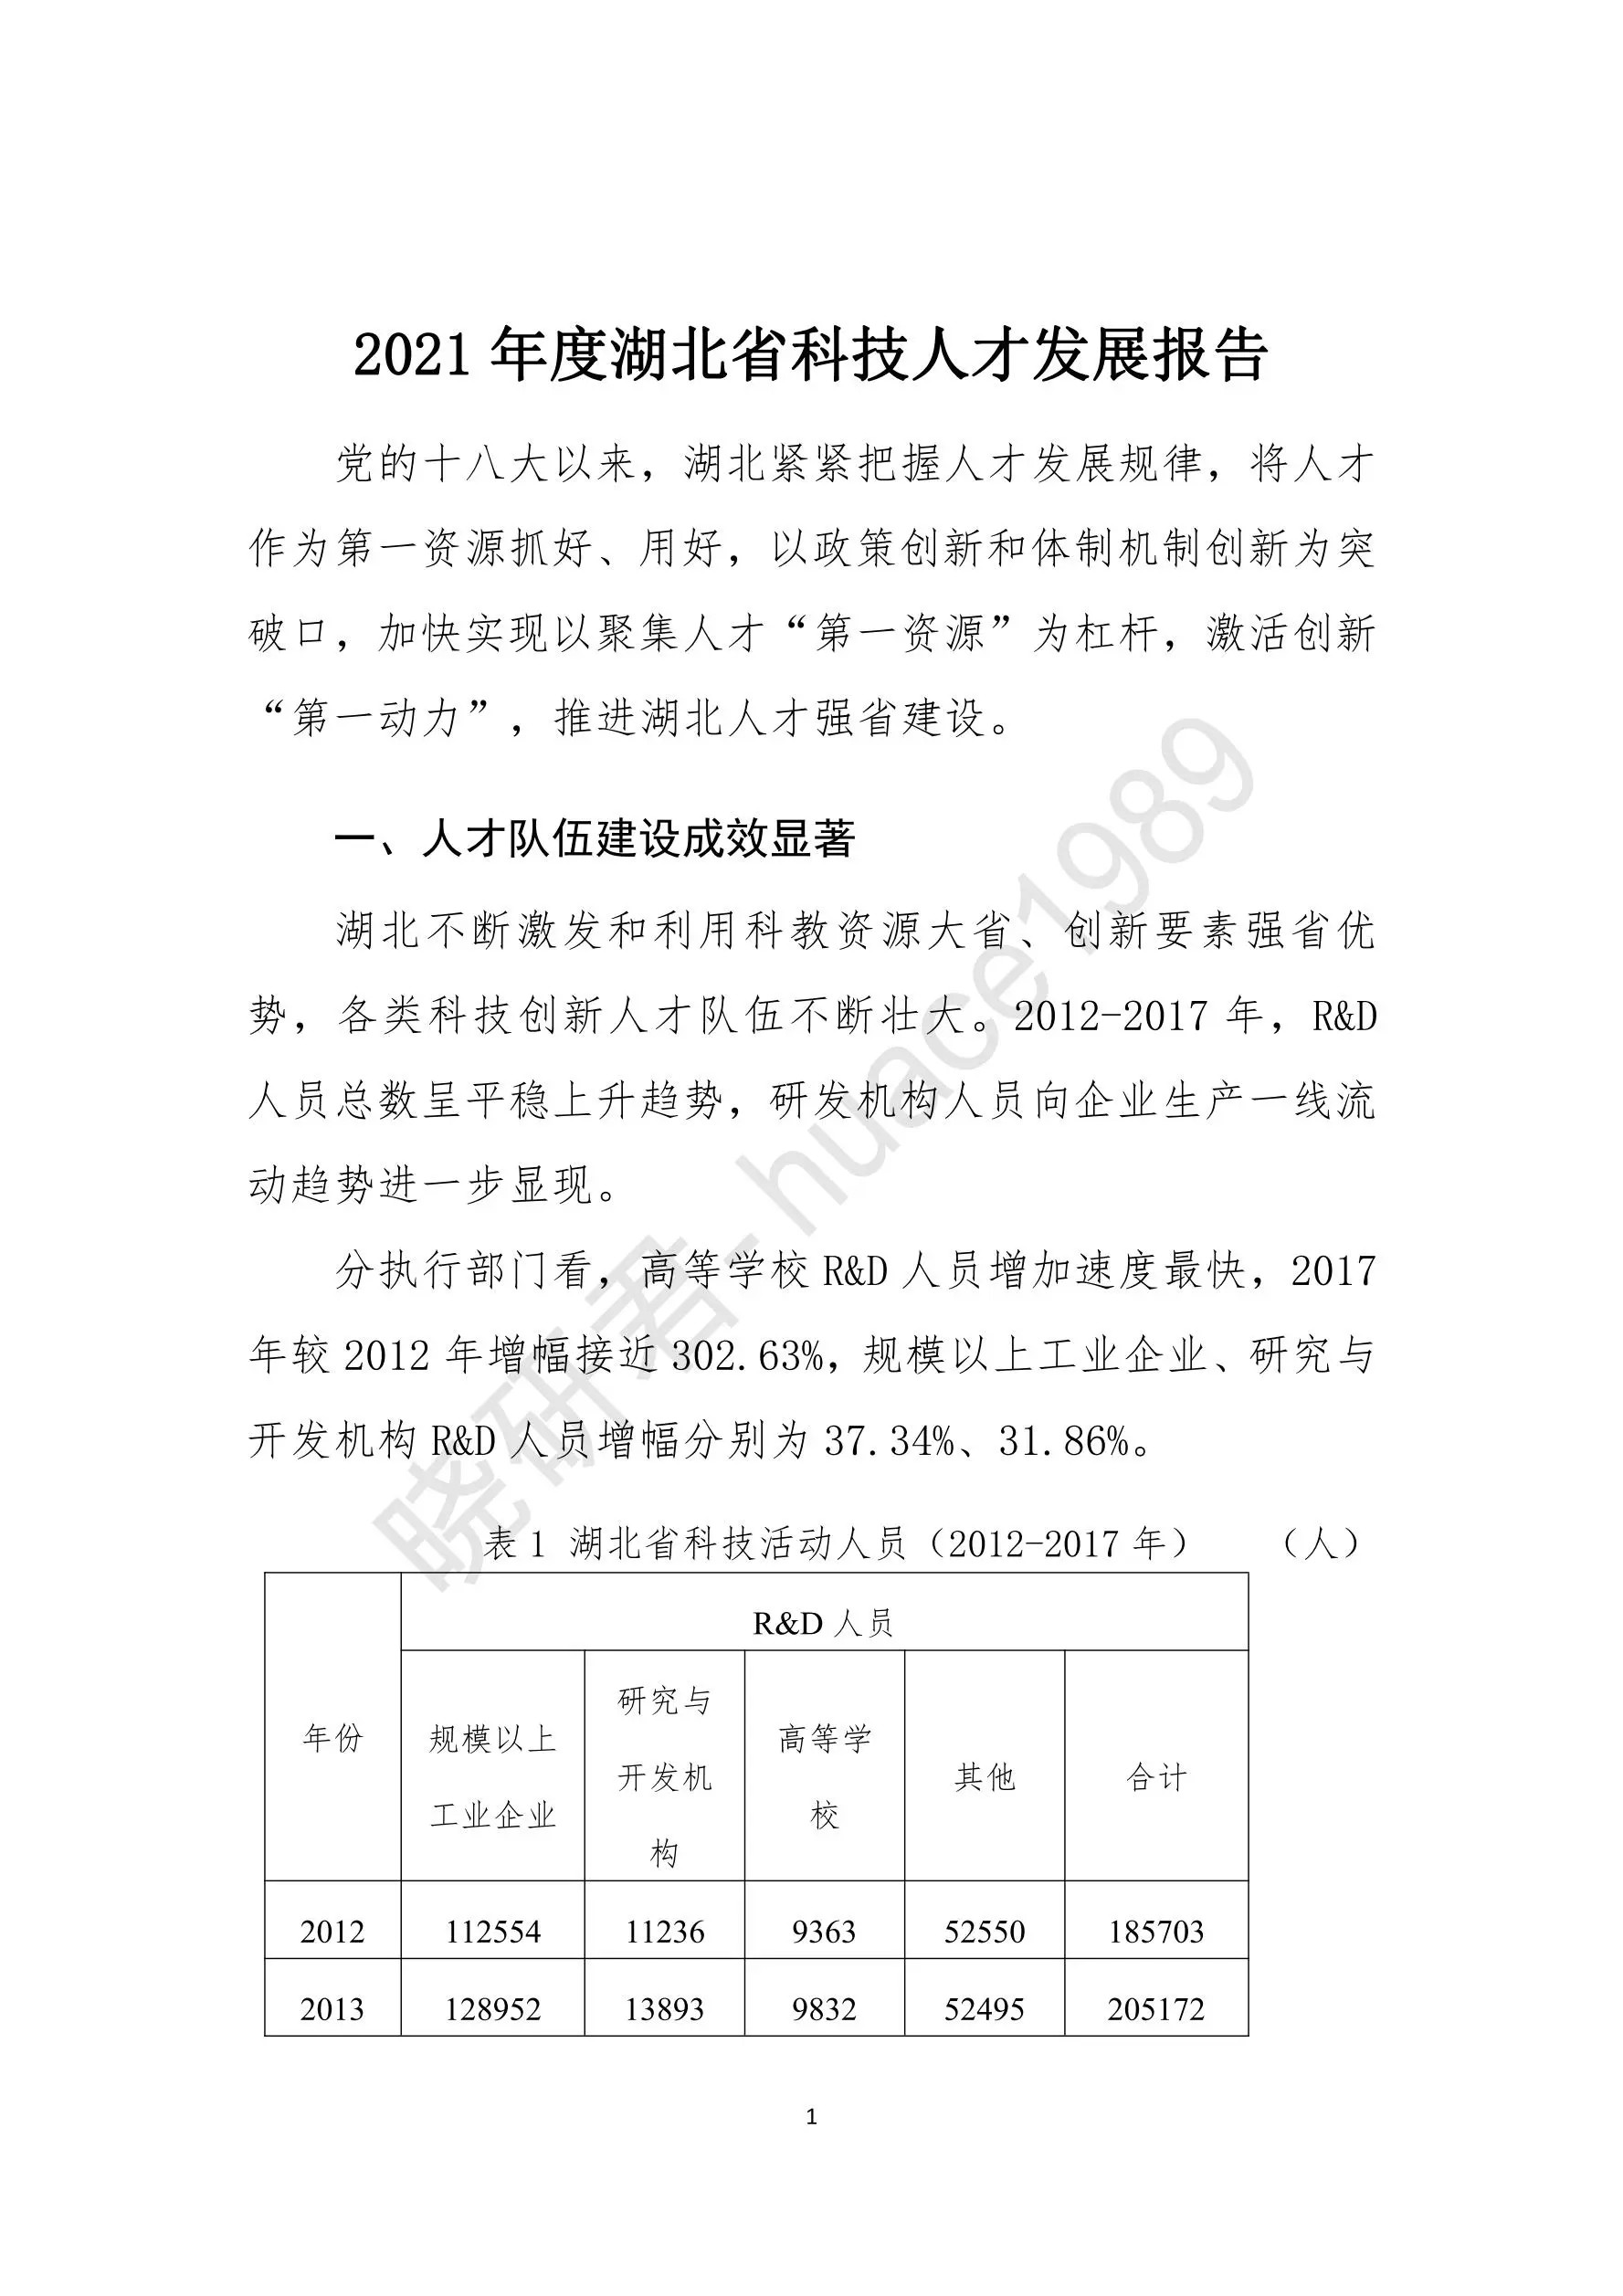 湖北省科技人才报告2021插图3